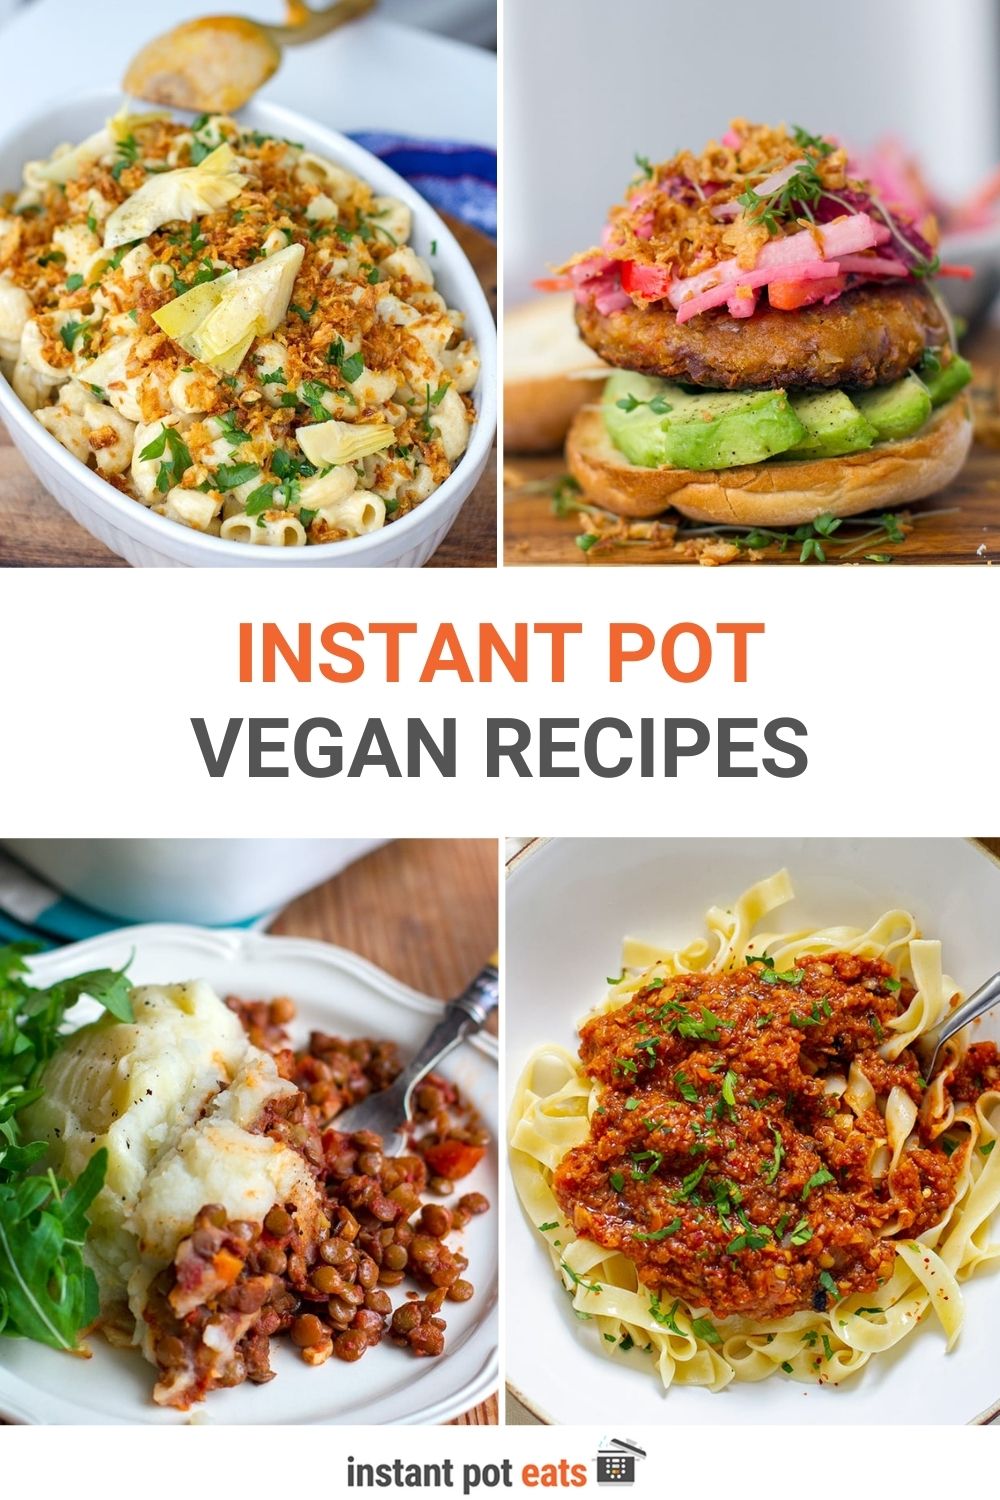 Vegan Instant Pot Recipes